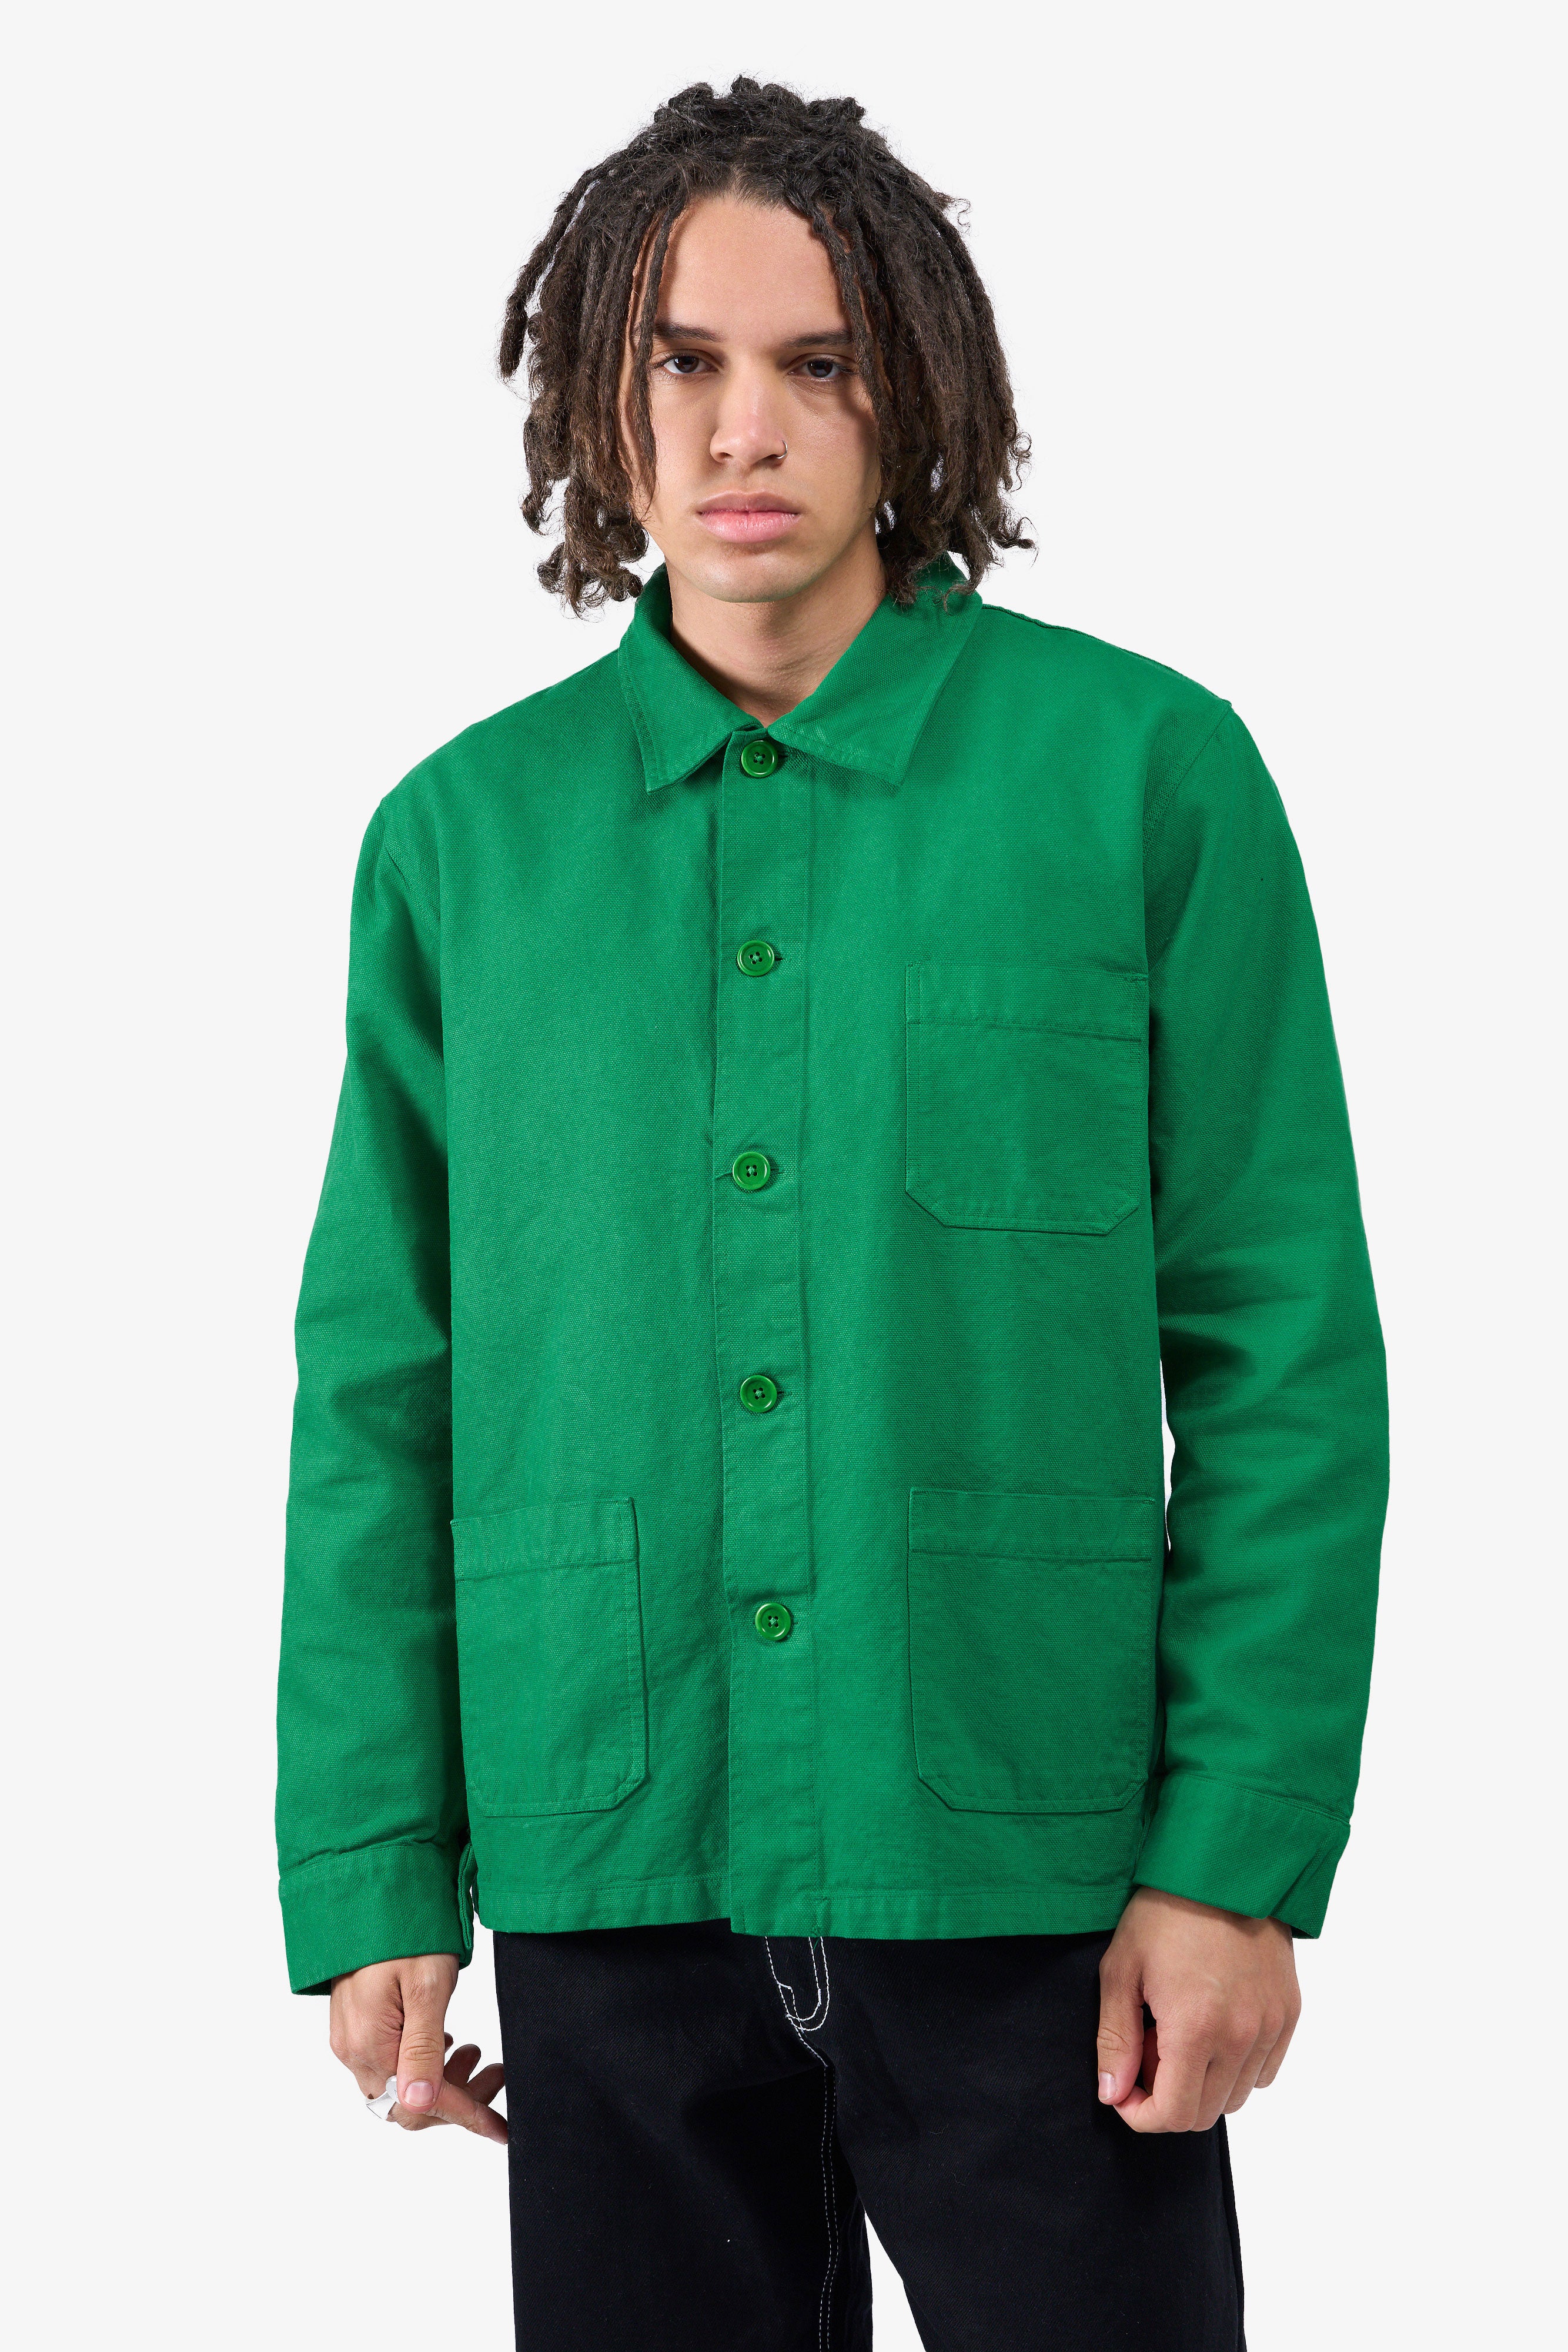 Organic Workwear Jacket - Dusty Olive